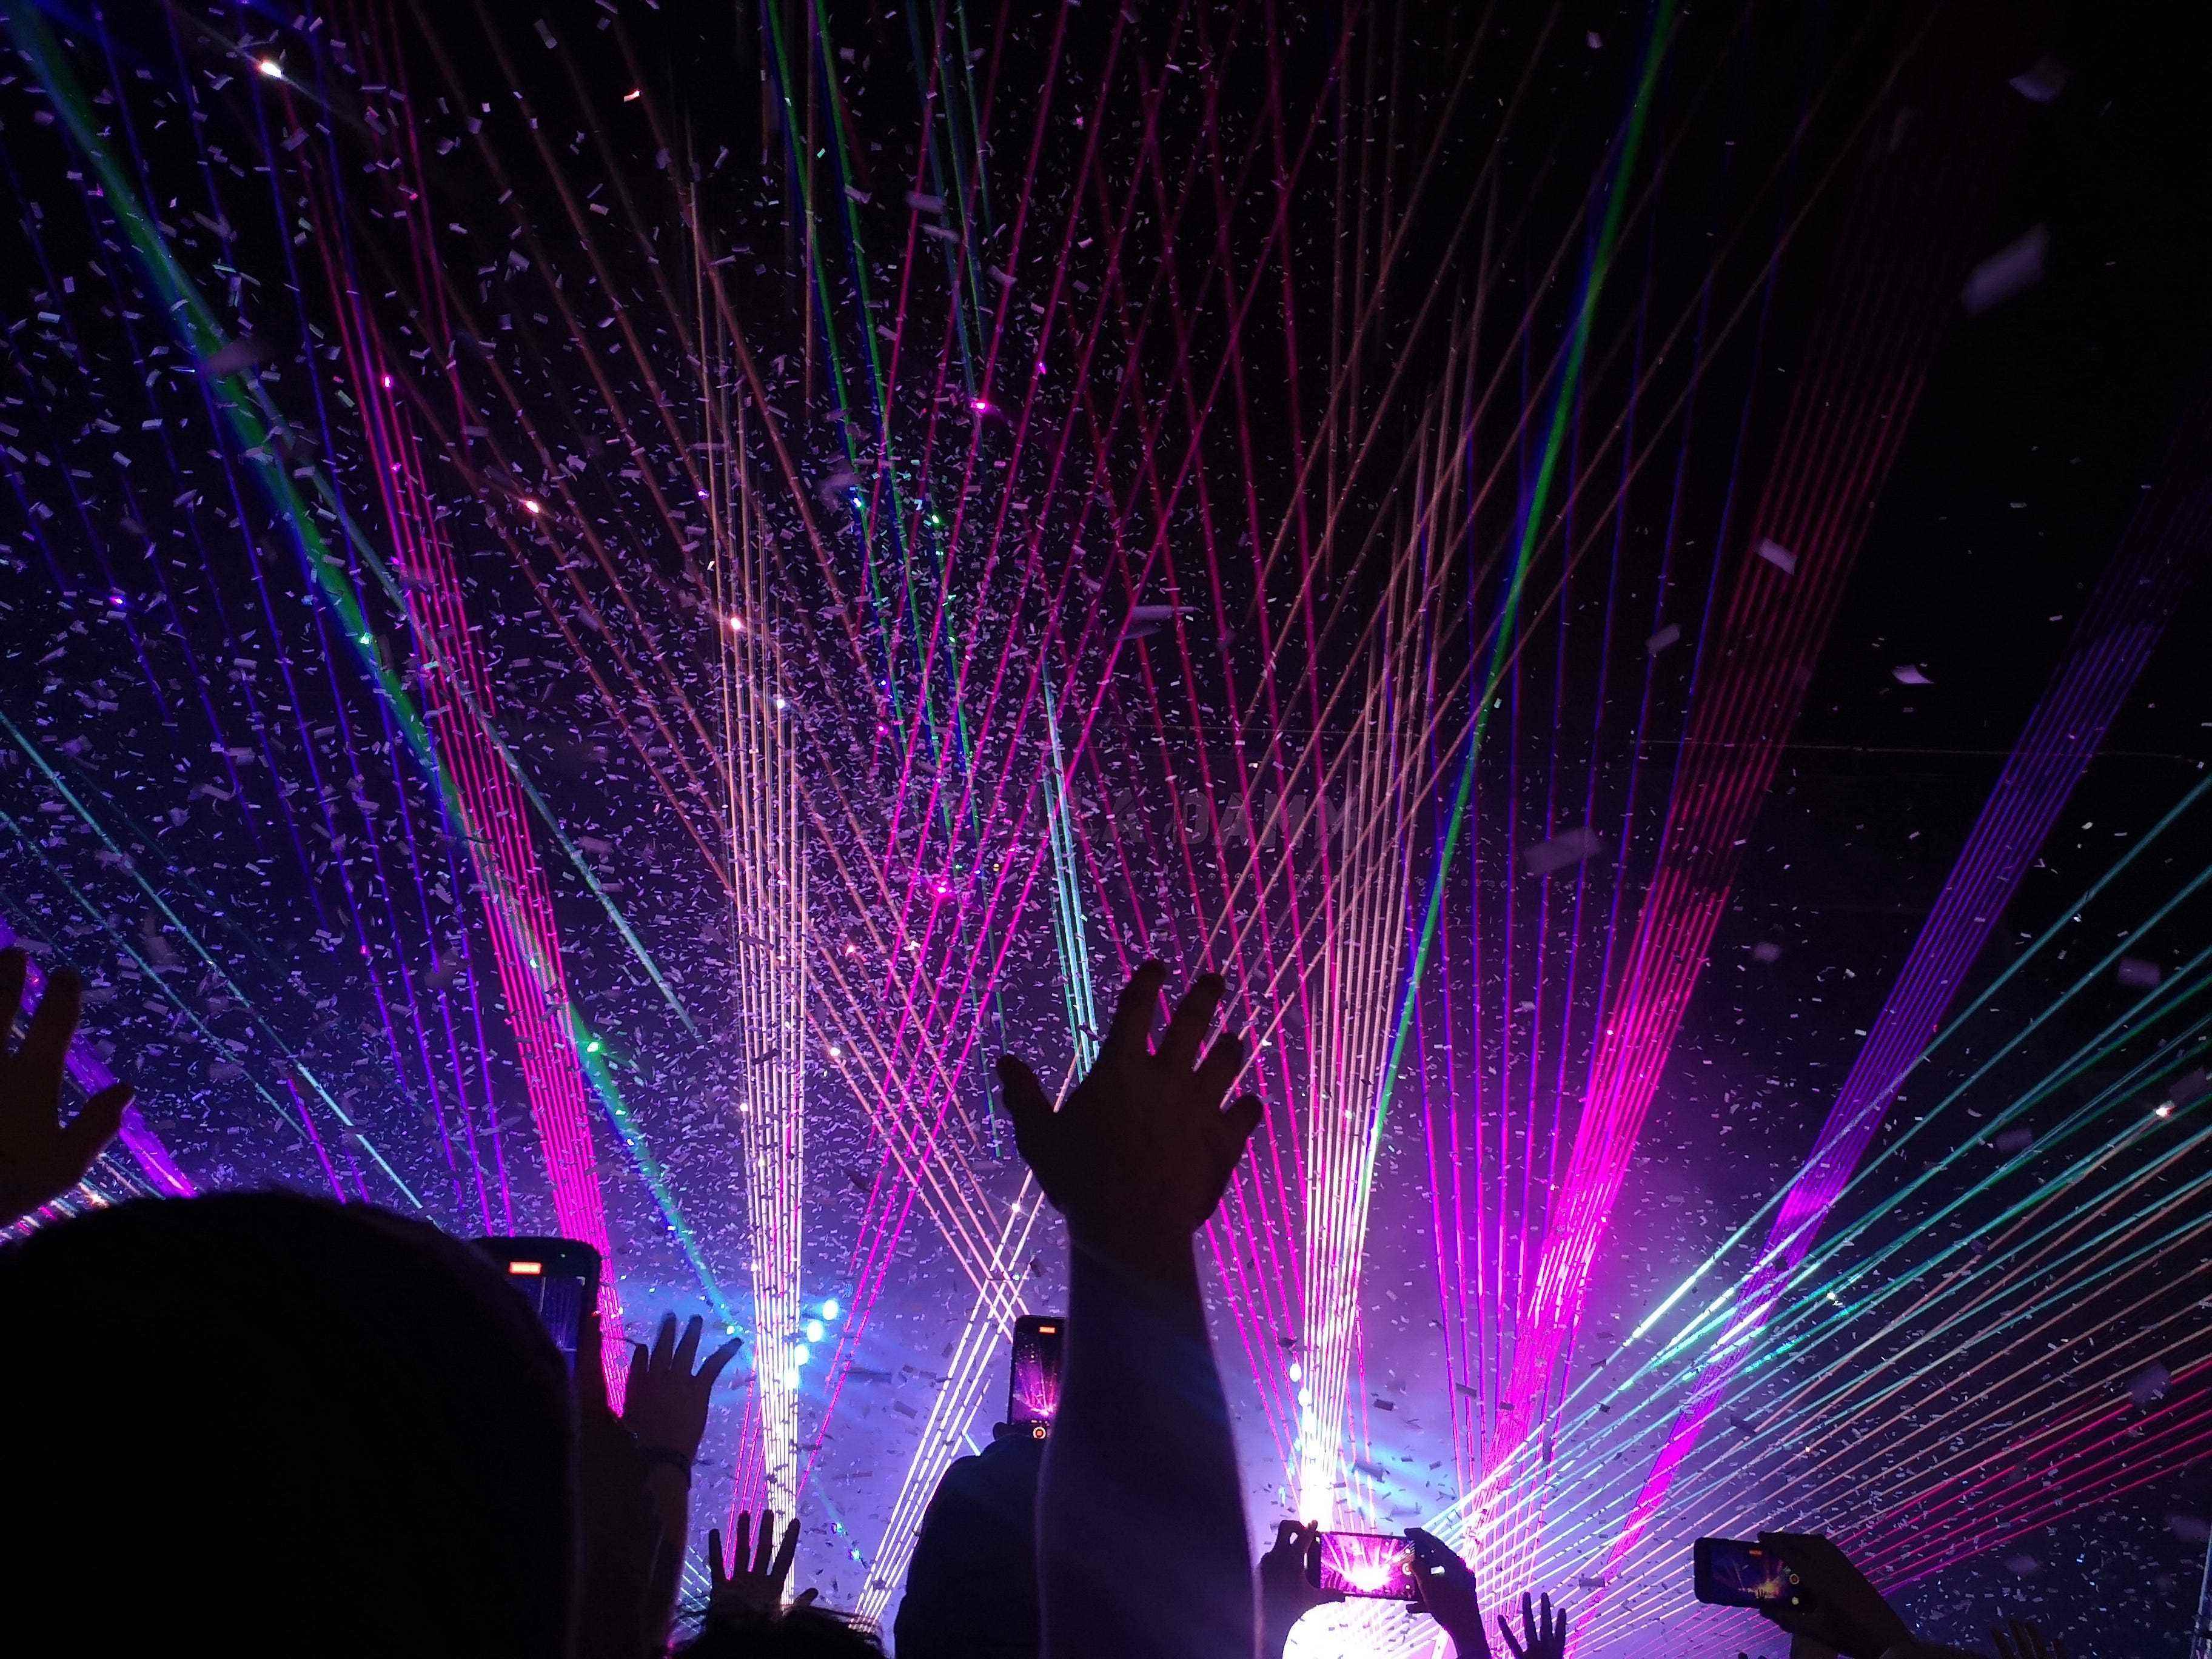 Beleuchtung und Konfetti während des Auftritts von Tame Impala am letzten Tag des Festivals.